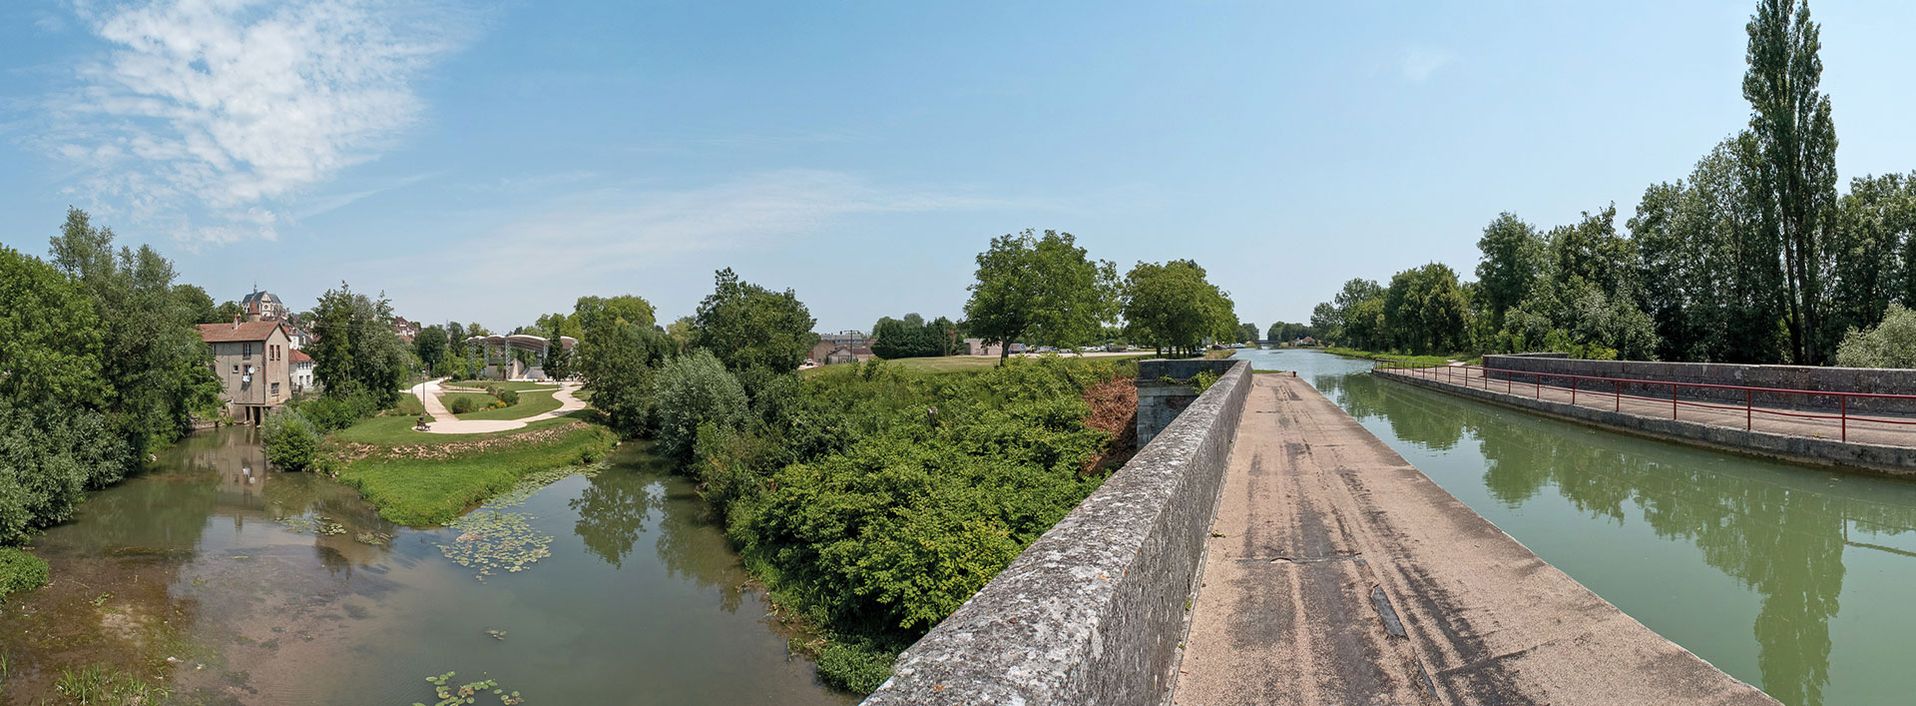 Autour du pont-canal de Saint-Florentin : l’Armance avec l’ancien moulin, le port, le pont-canal. La ville de Saint-Florentin est à gauche.